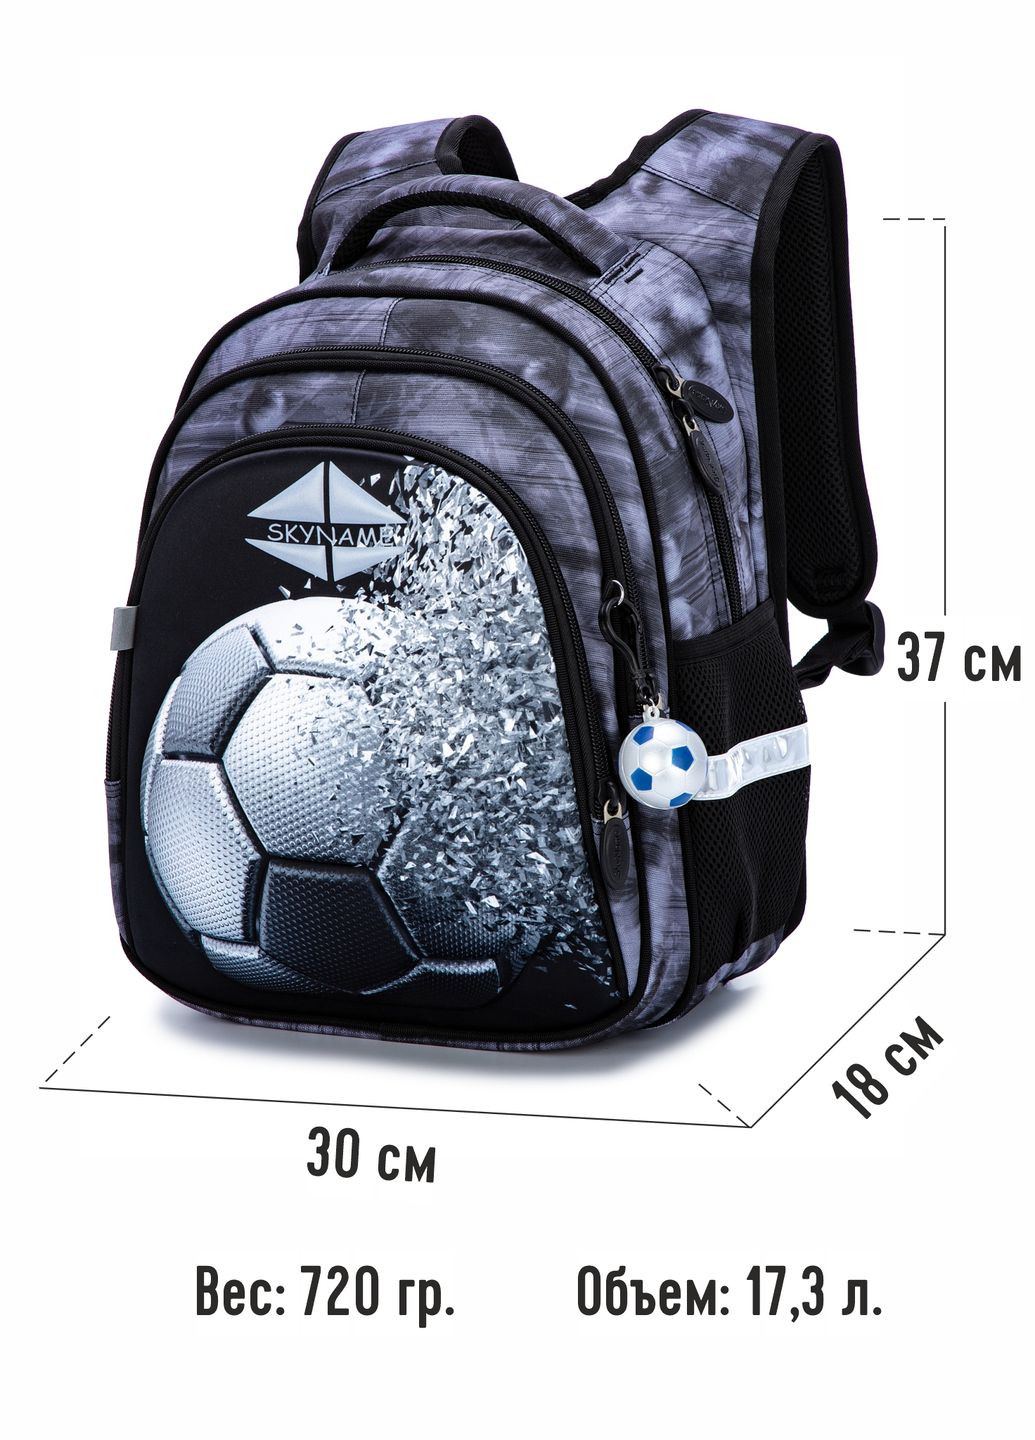 Ортопедичний рюкзак для хлопчика сірий з М'ячем /SkyName37х30х18 см для молодших класів (R2-193) Winner (293504194)